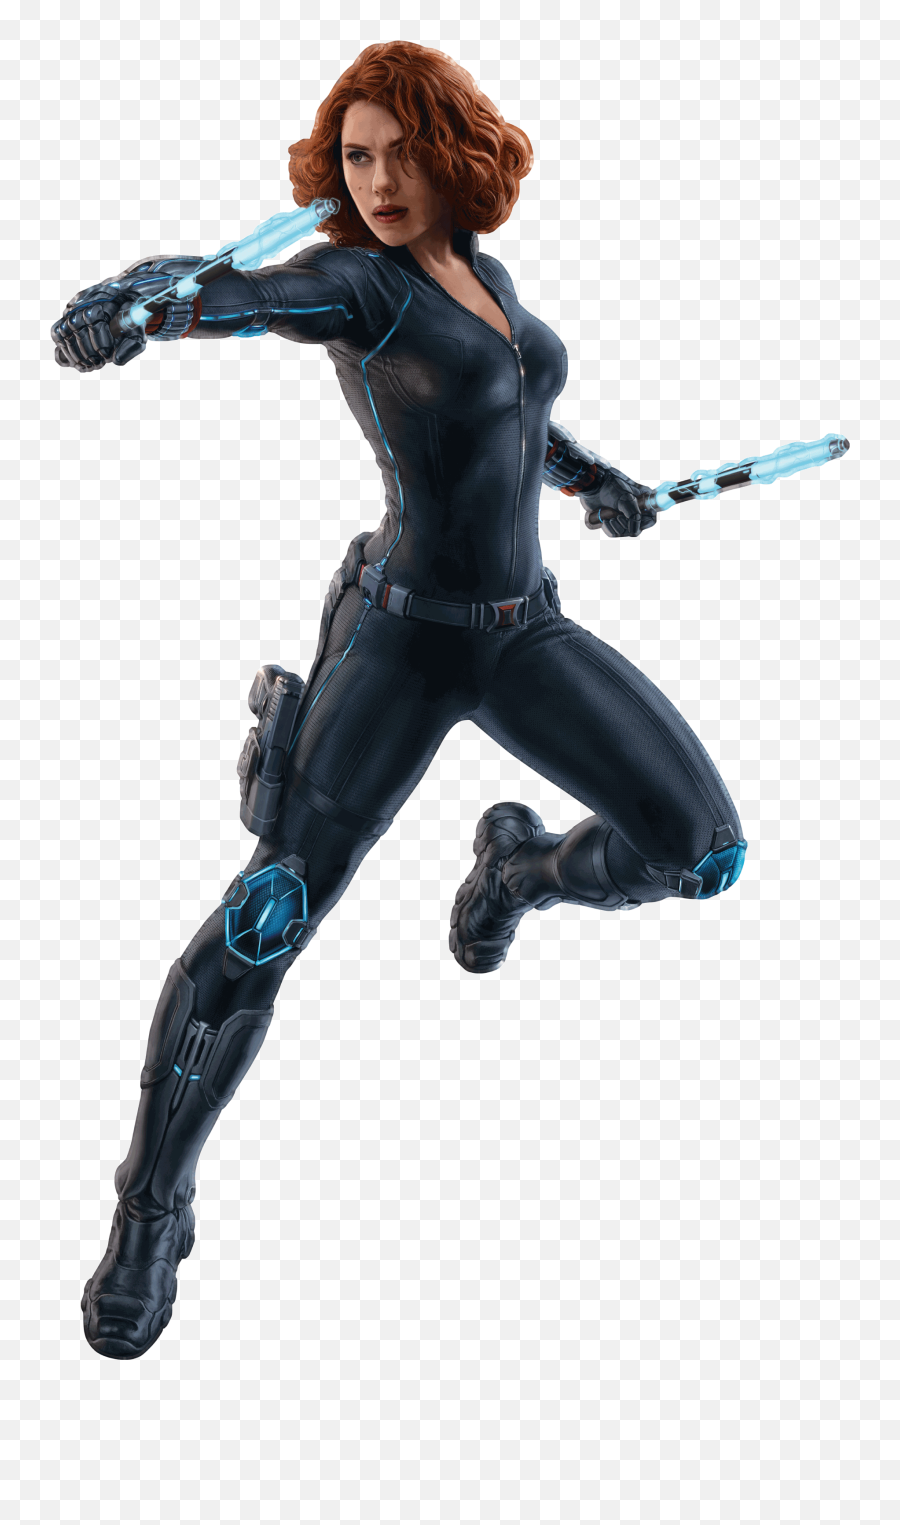 Black Widow - Black Widow Png Emoji,Black Widow Png